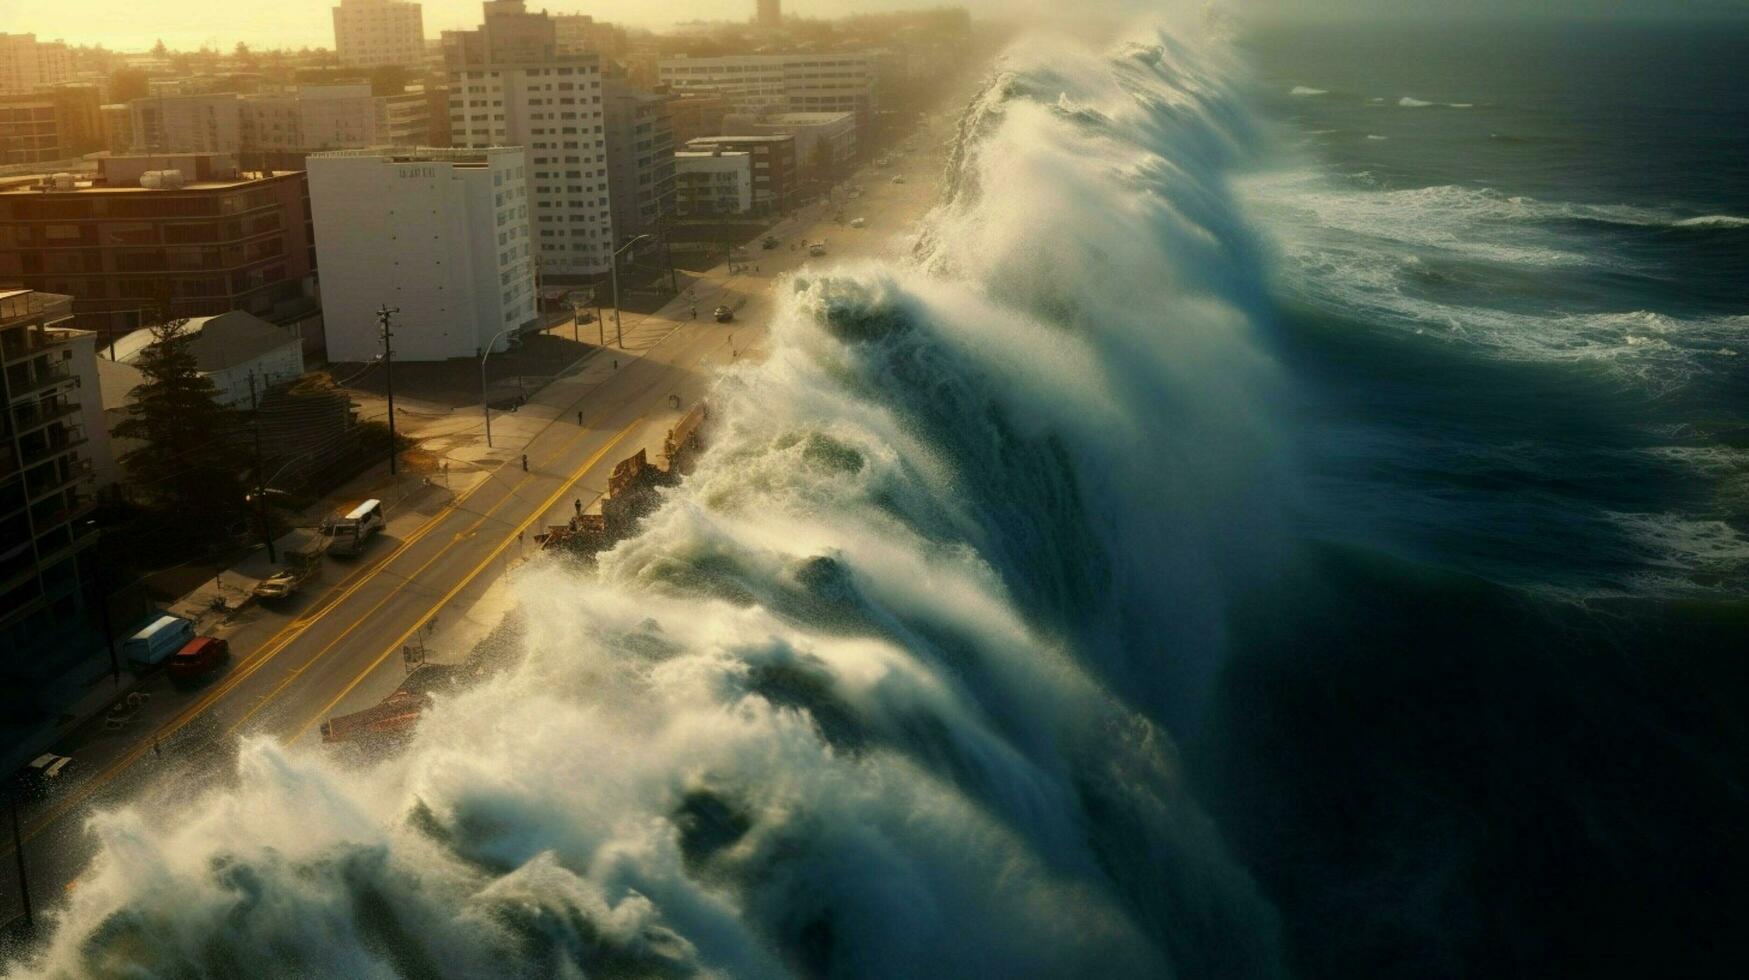 tsunami onde schianto contro alto diga protecti foto